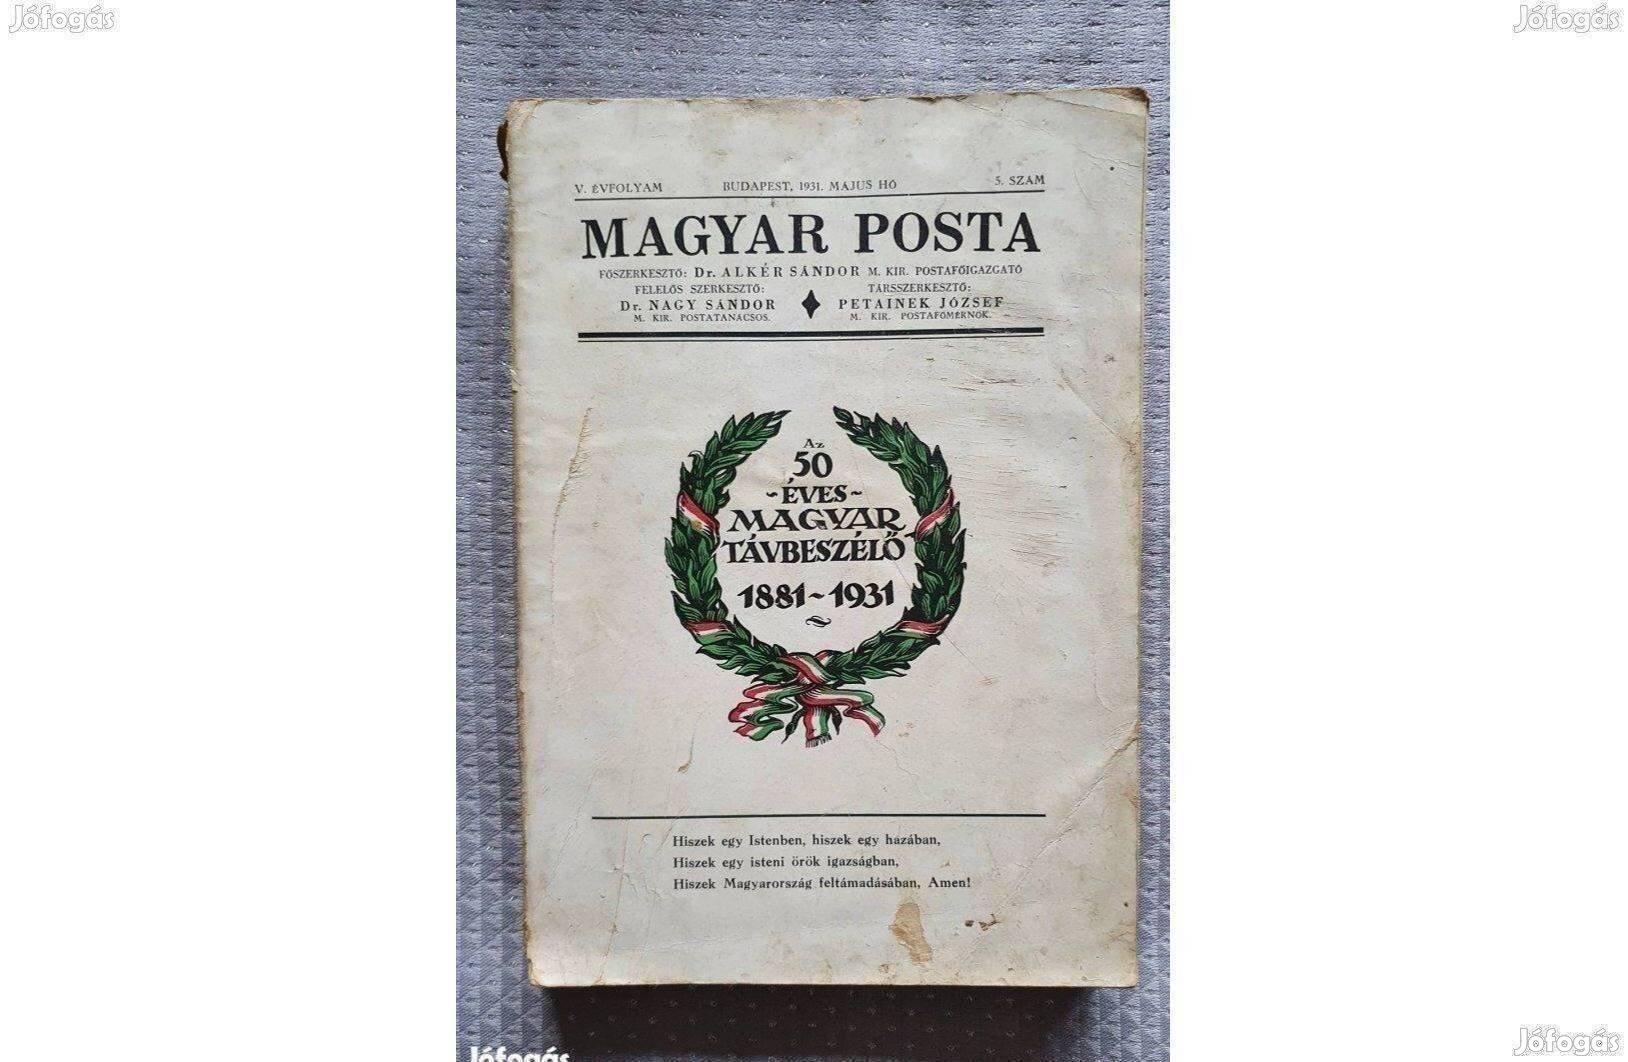 Magyar Posta: Az 50 éves magyar távbeszélő 1881-1931